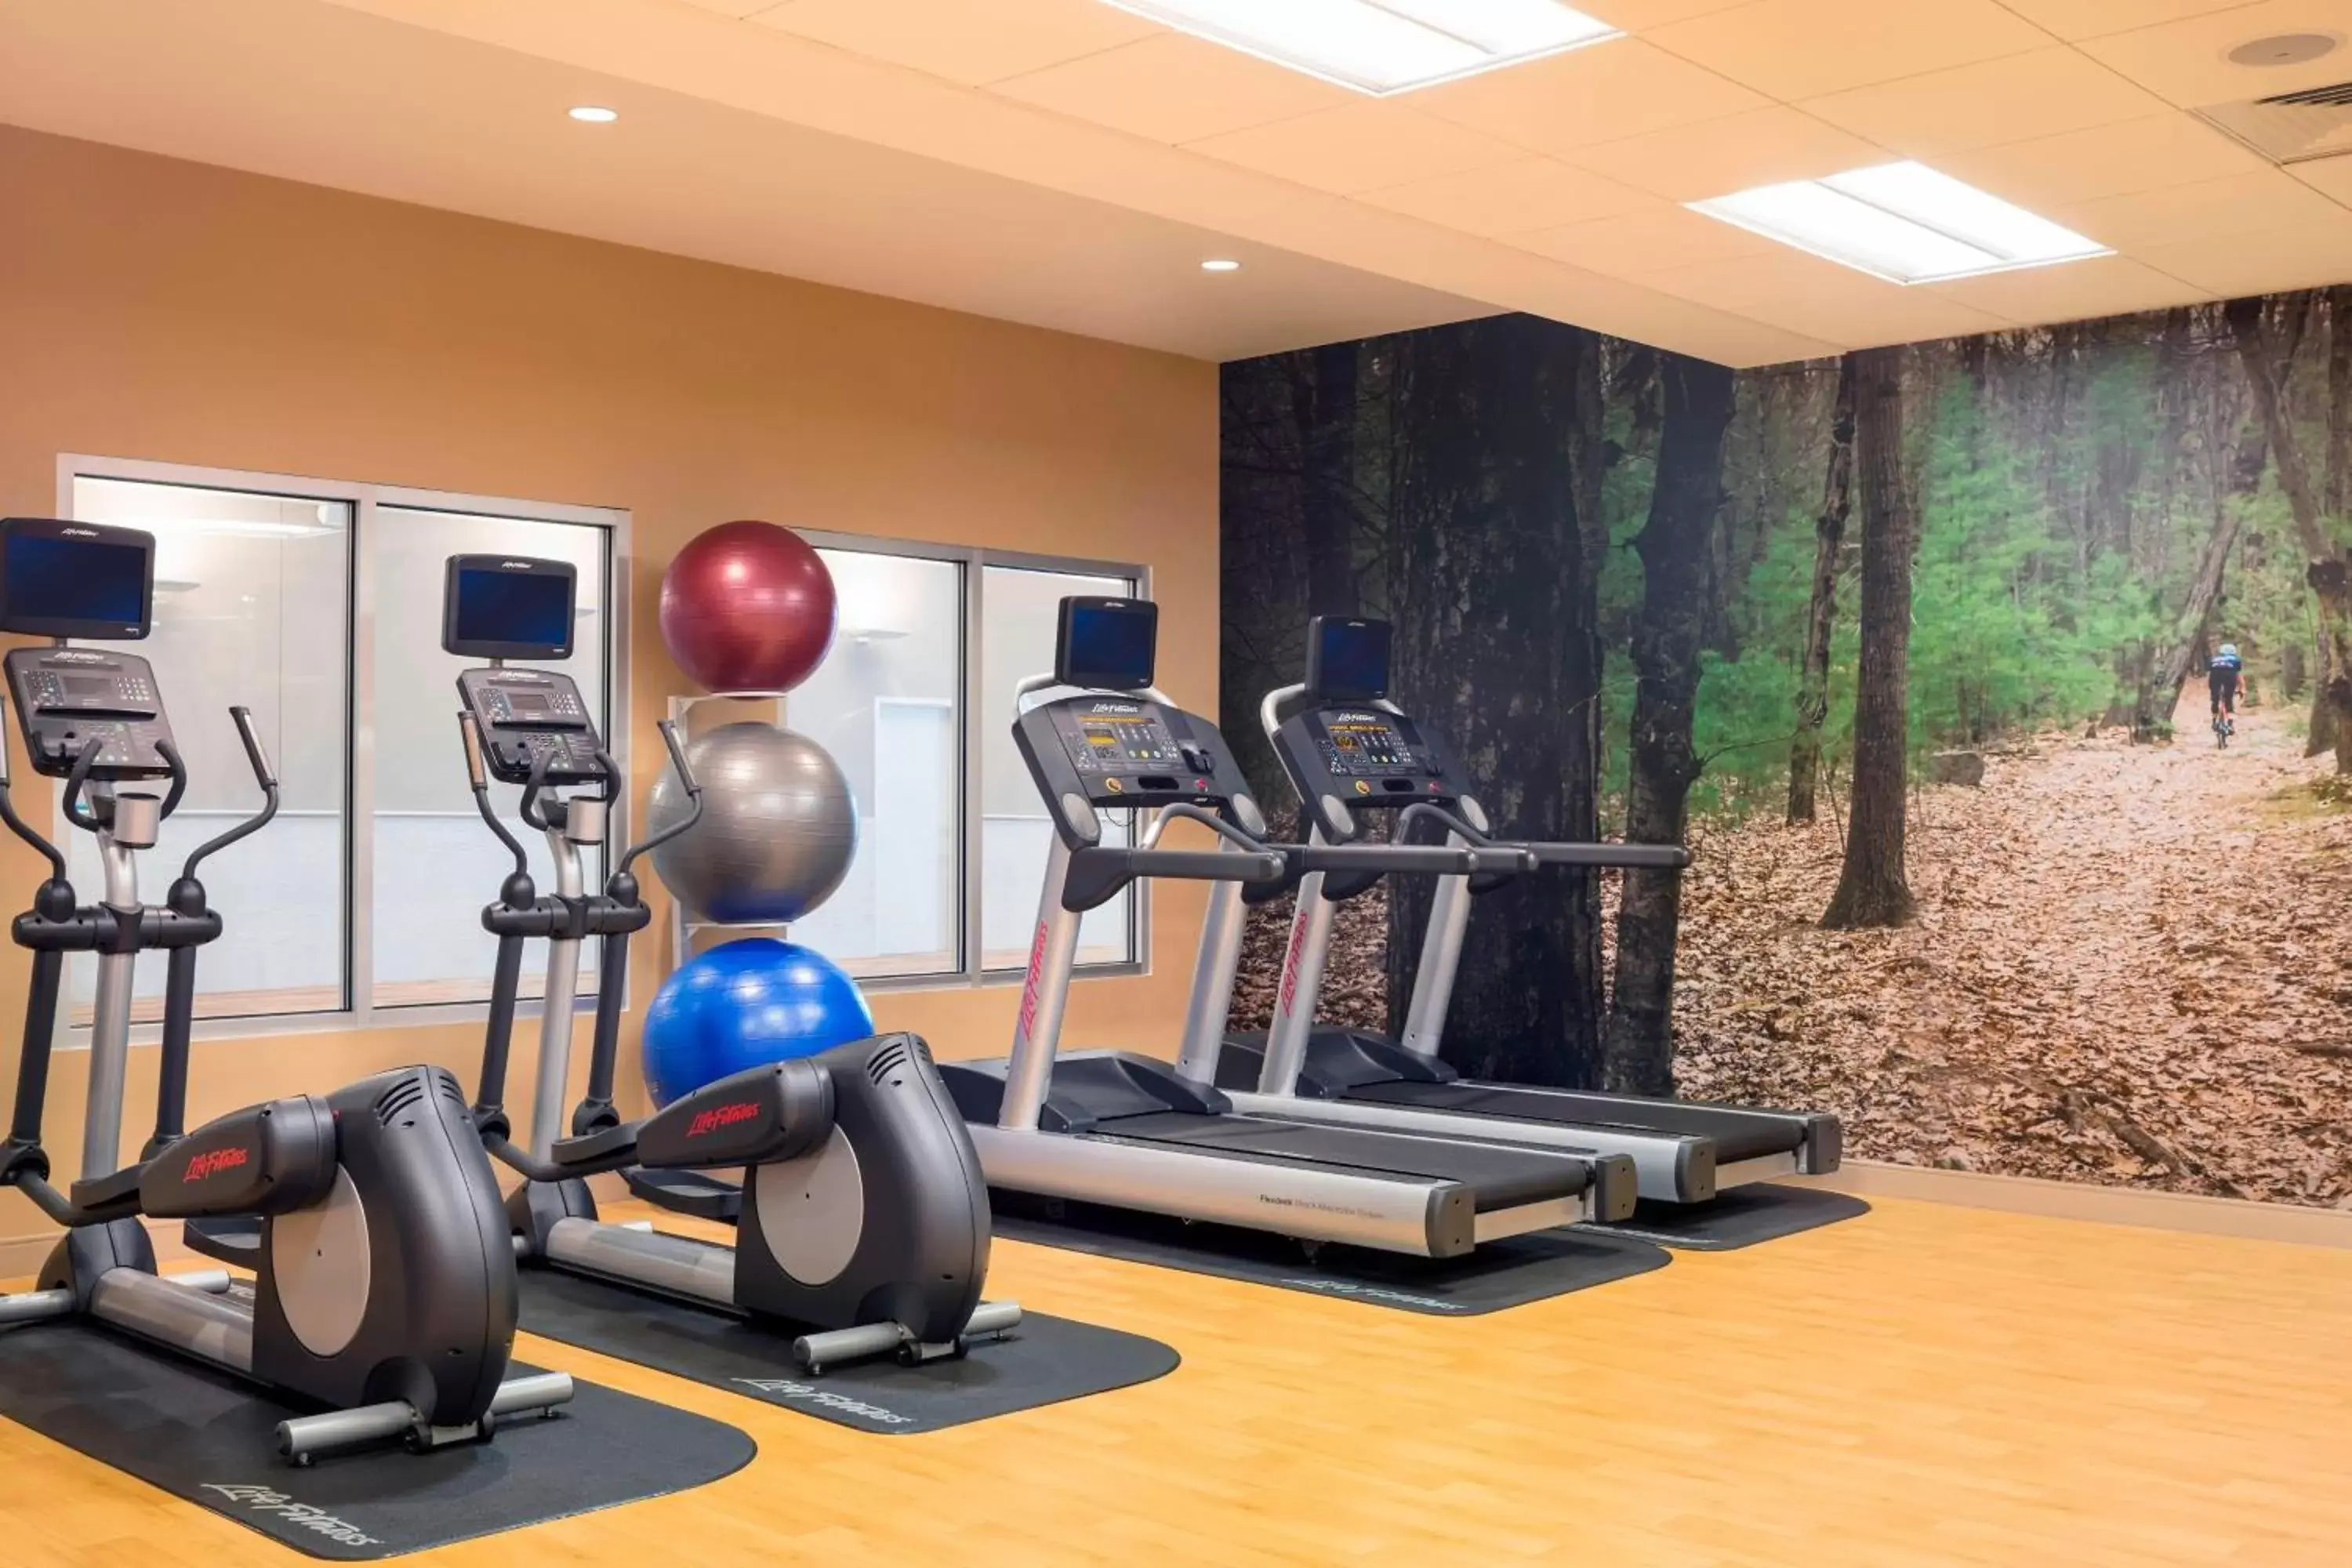 Fitness centre/facilities, Fitness Center/Facilities in Residence Inn by Marriott Boston Burlington